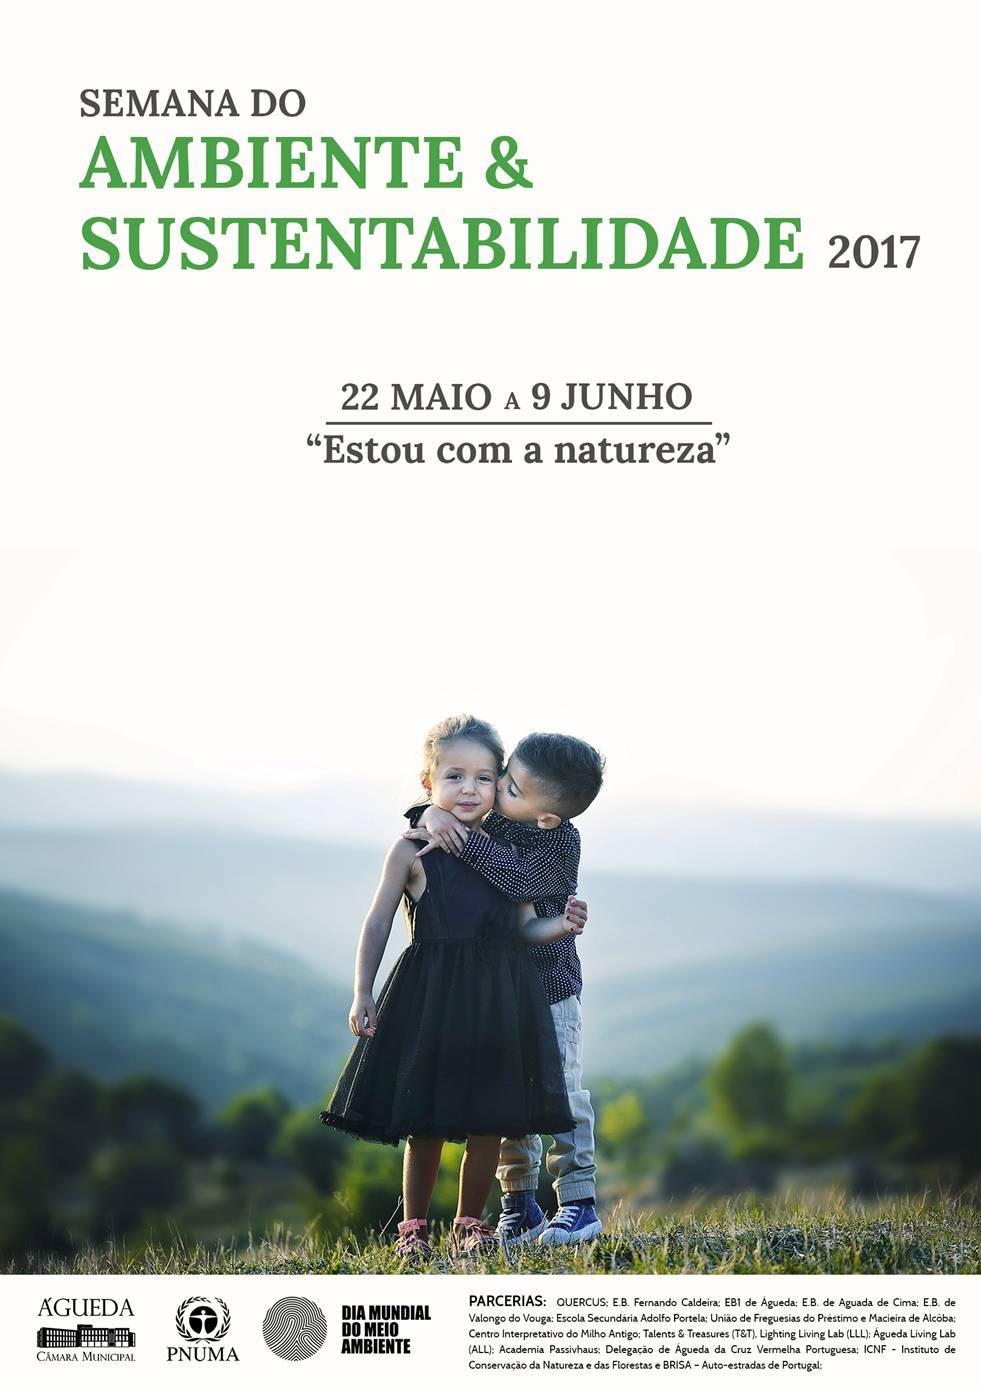 Semana do Ambiente e Sustentabilidade 2017 :: 22 maio a 9 junho